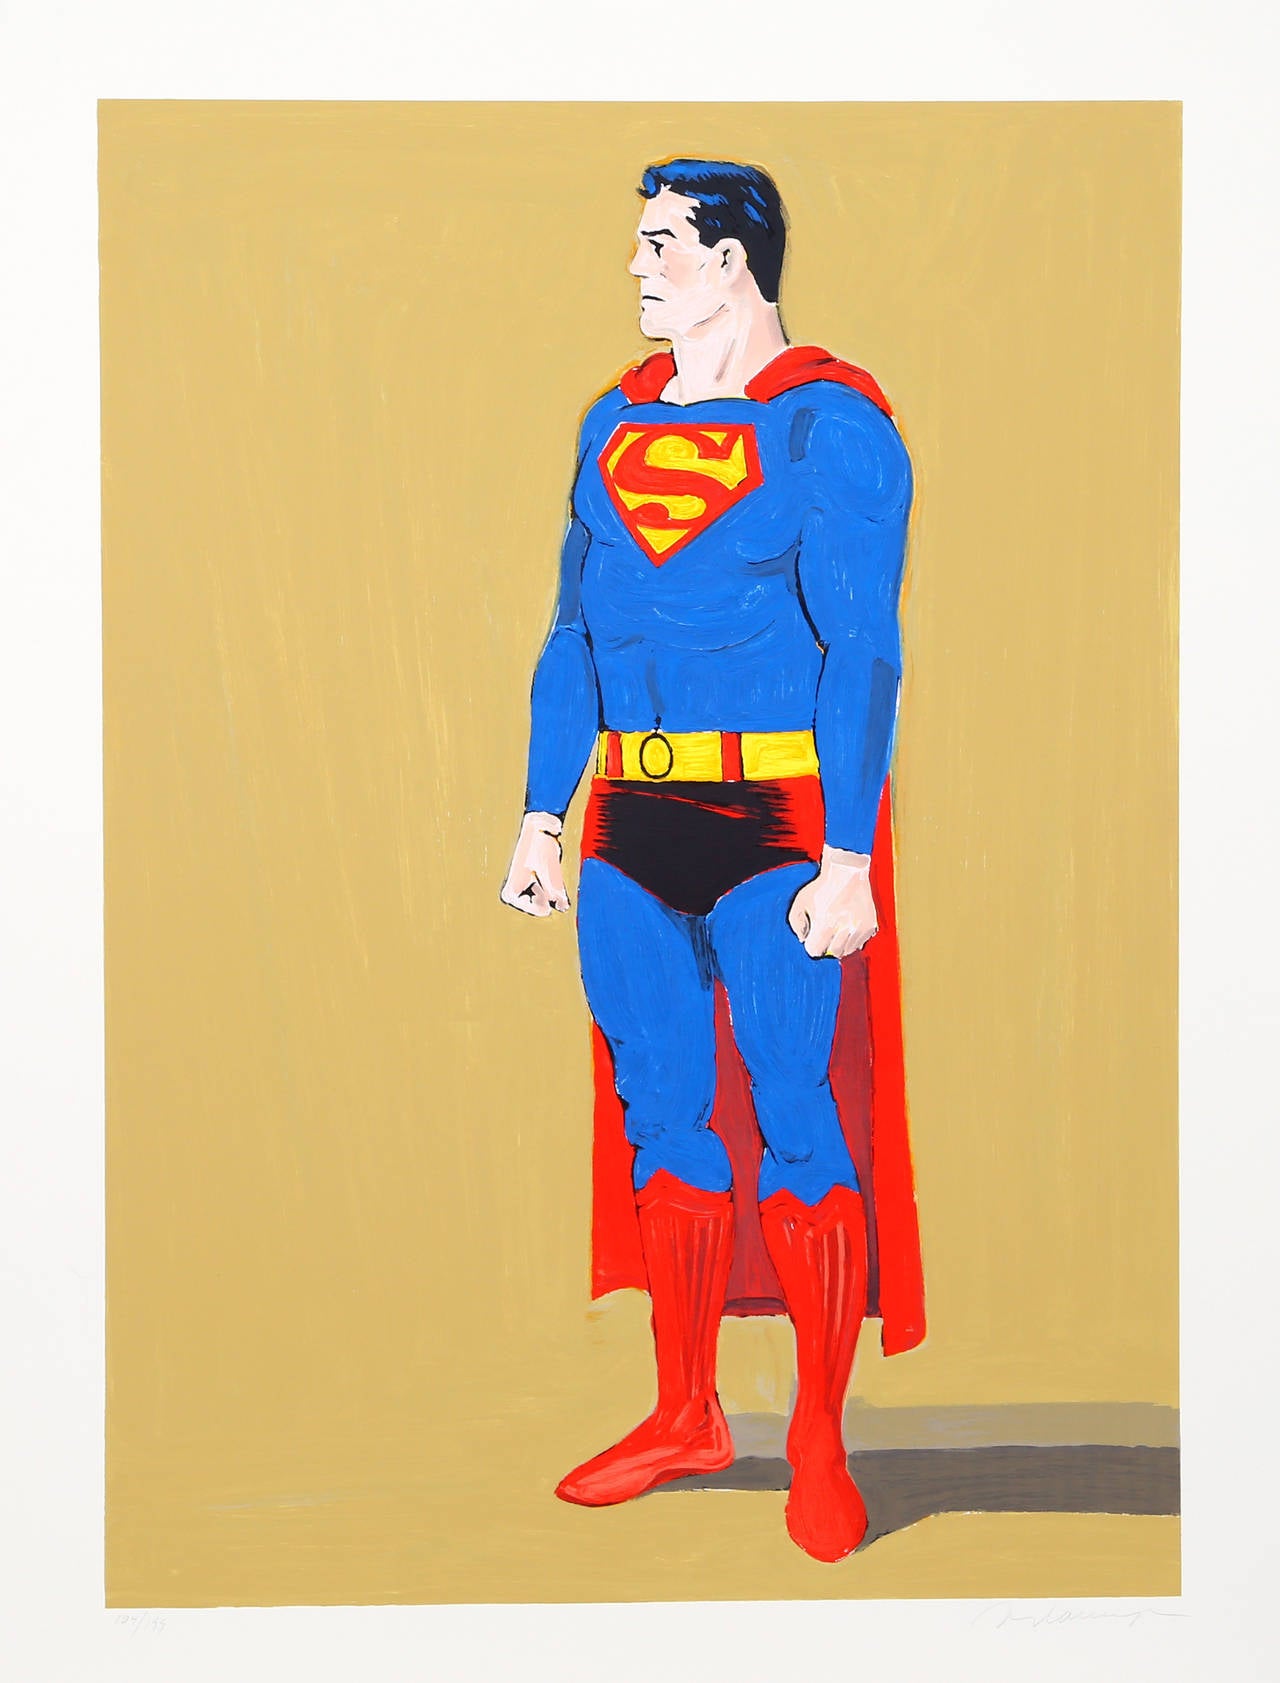 Artistics : Mel Ramos, Américain (1935 - )
Titre : Superman
Année : 2006
Médium : Lithographie, signée et numérotée au crayon
Édition : 199
Taille de l'image : 37 x 27 pouces
Taille : 45.5 x 33.5 in. (115.57 x 85.09 cm)